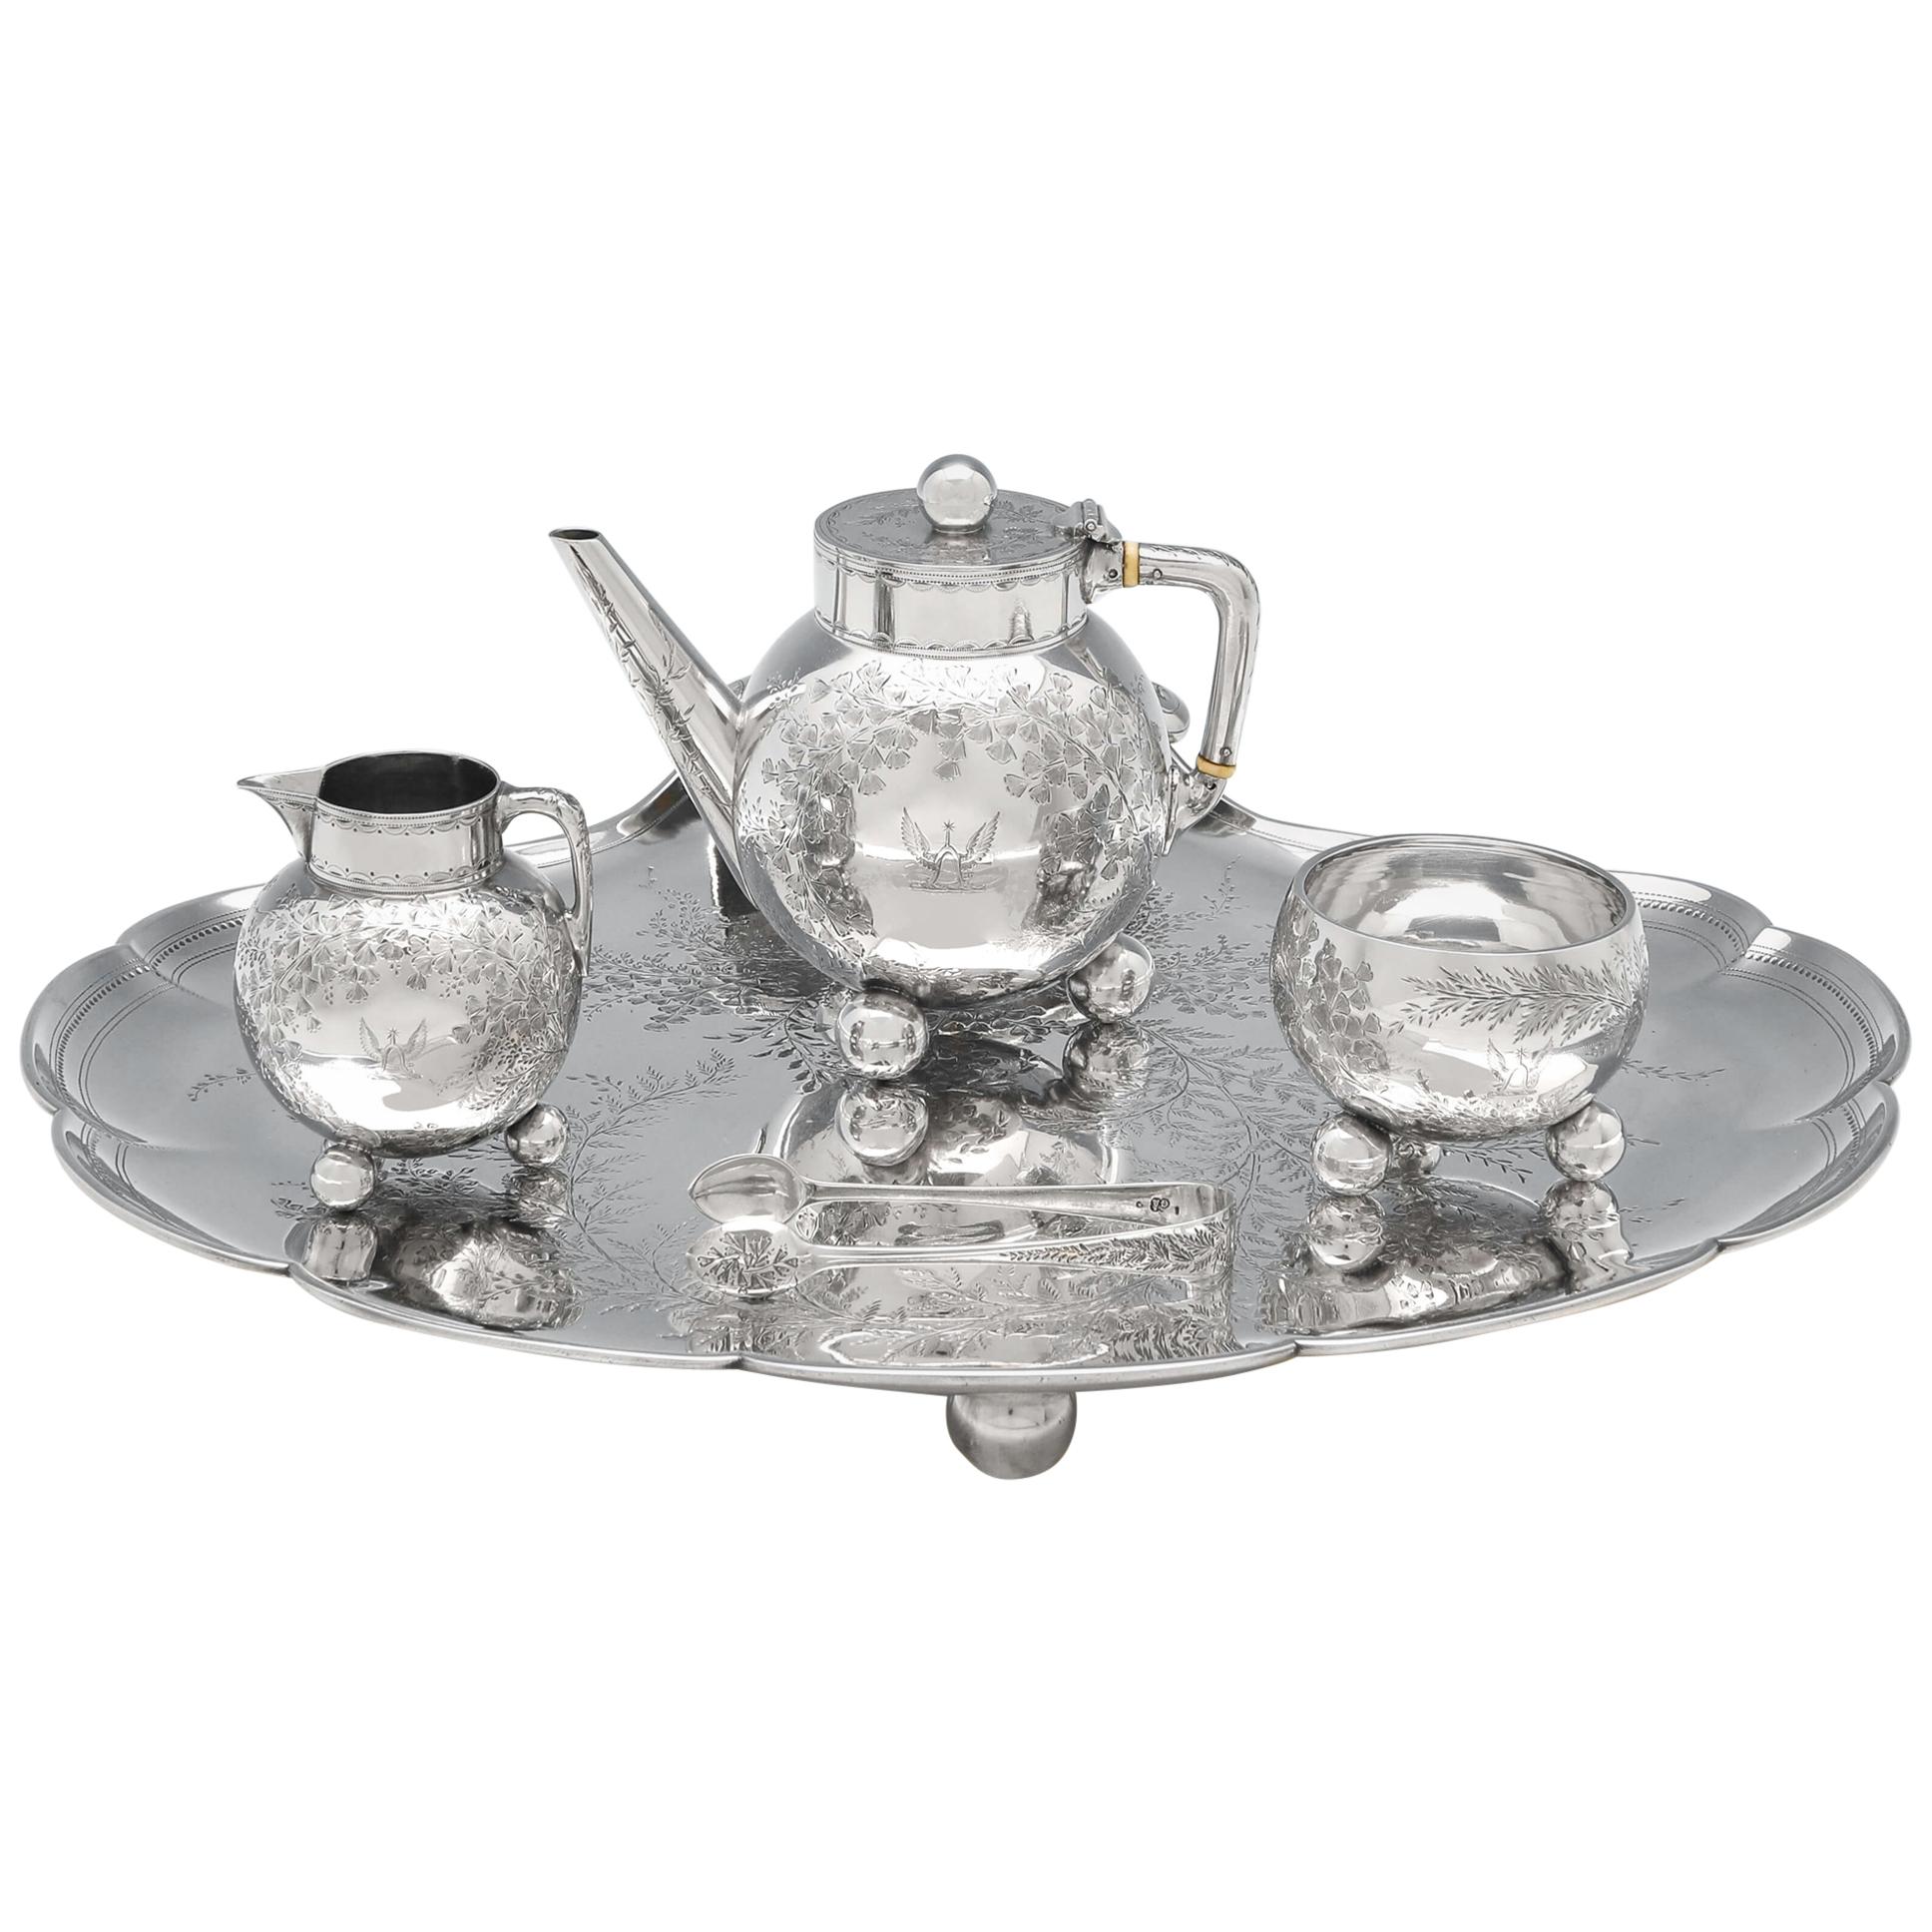 Christopher Dresser Design Antique Sterling Silver Tea Set on Tray by Elkington